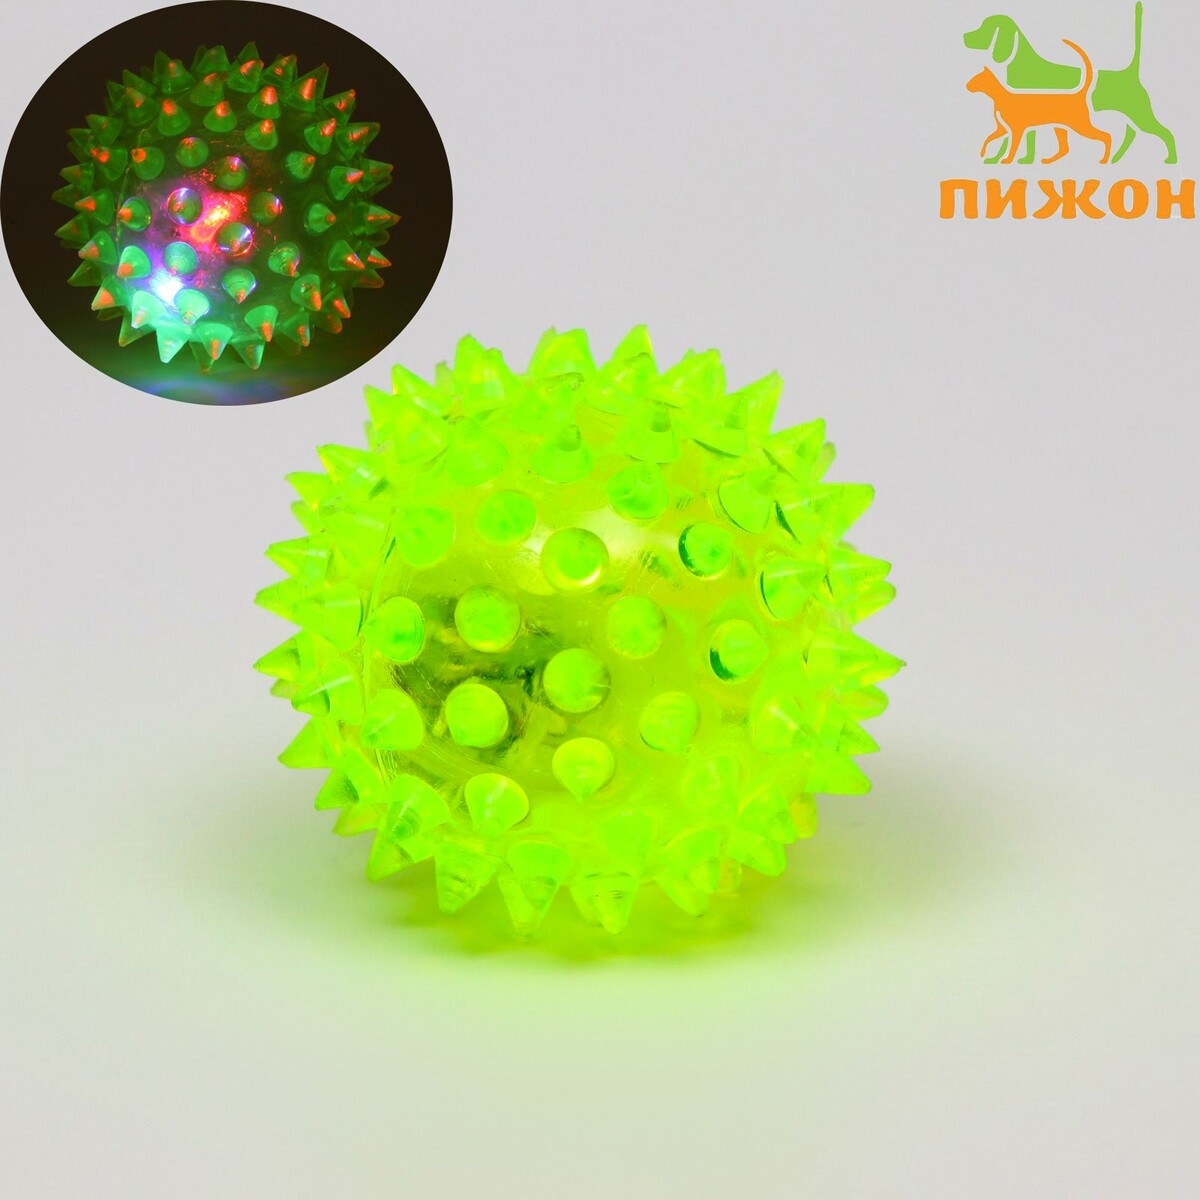 Мяч светящийся для собак средний, tpr, 5,5 см, жёлтый, Пижон